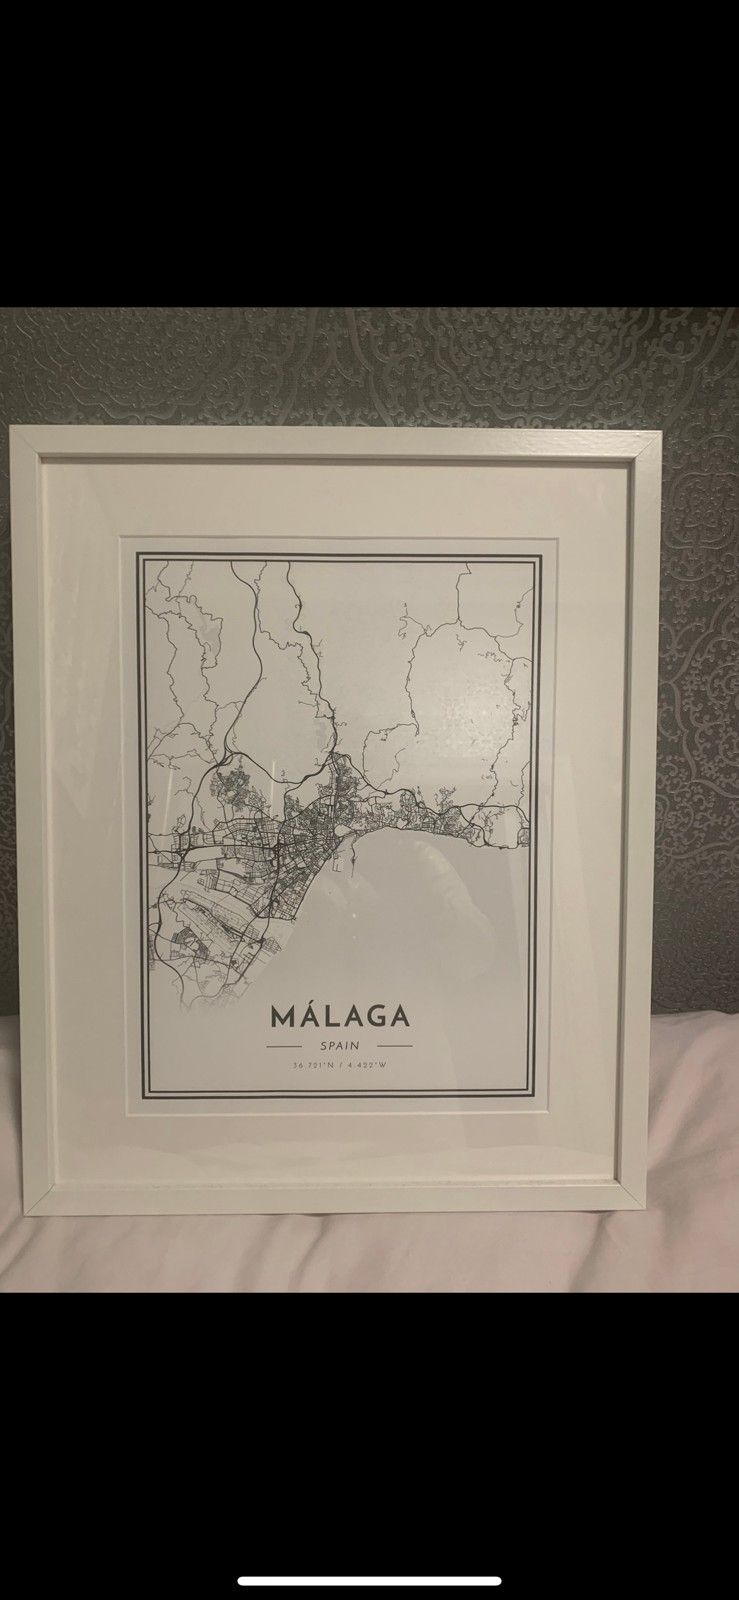 Malaga kartta kehyksissä